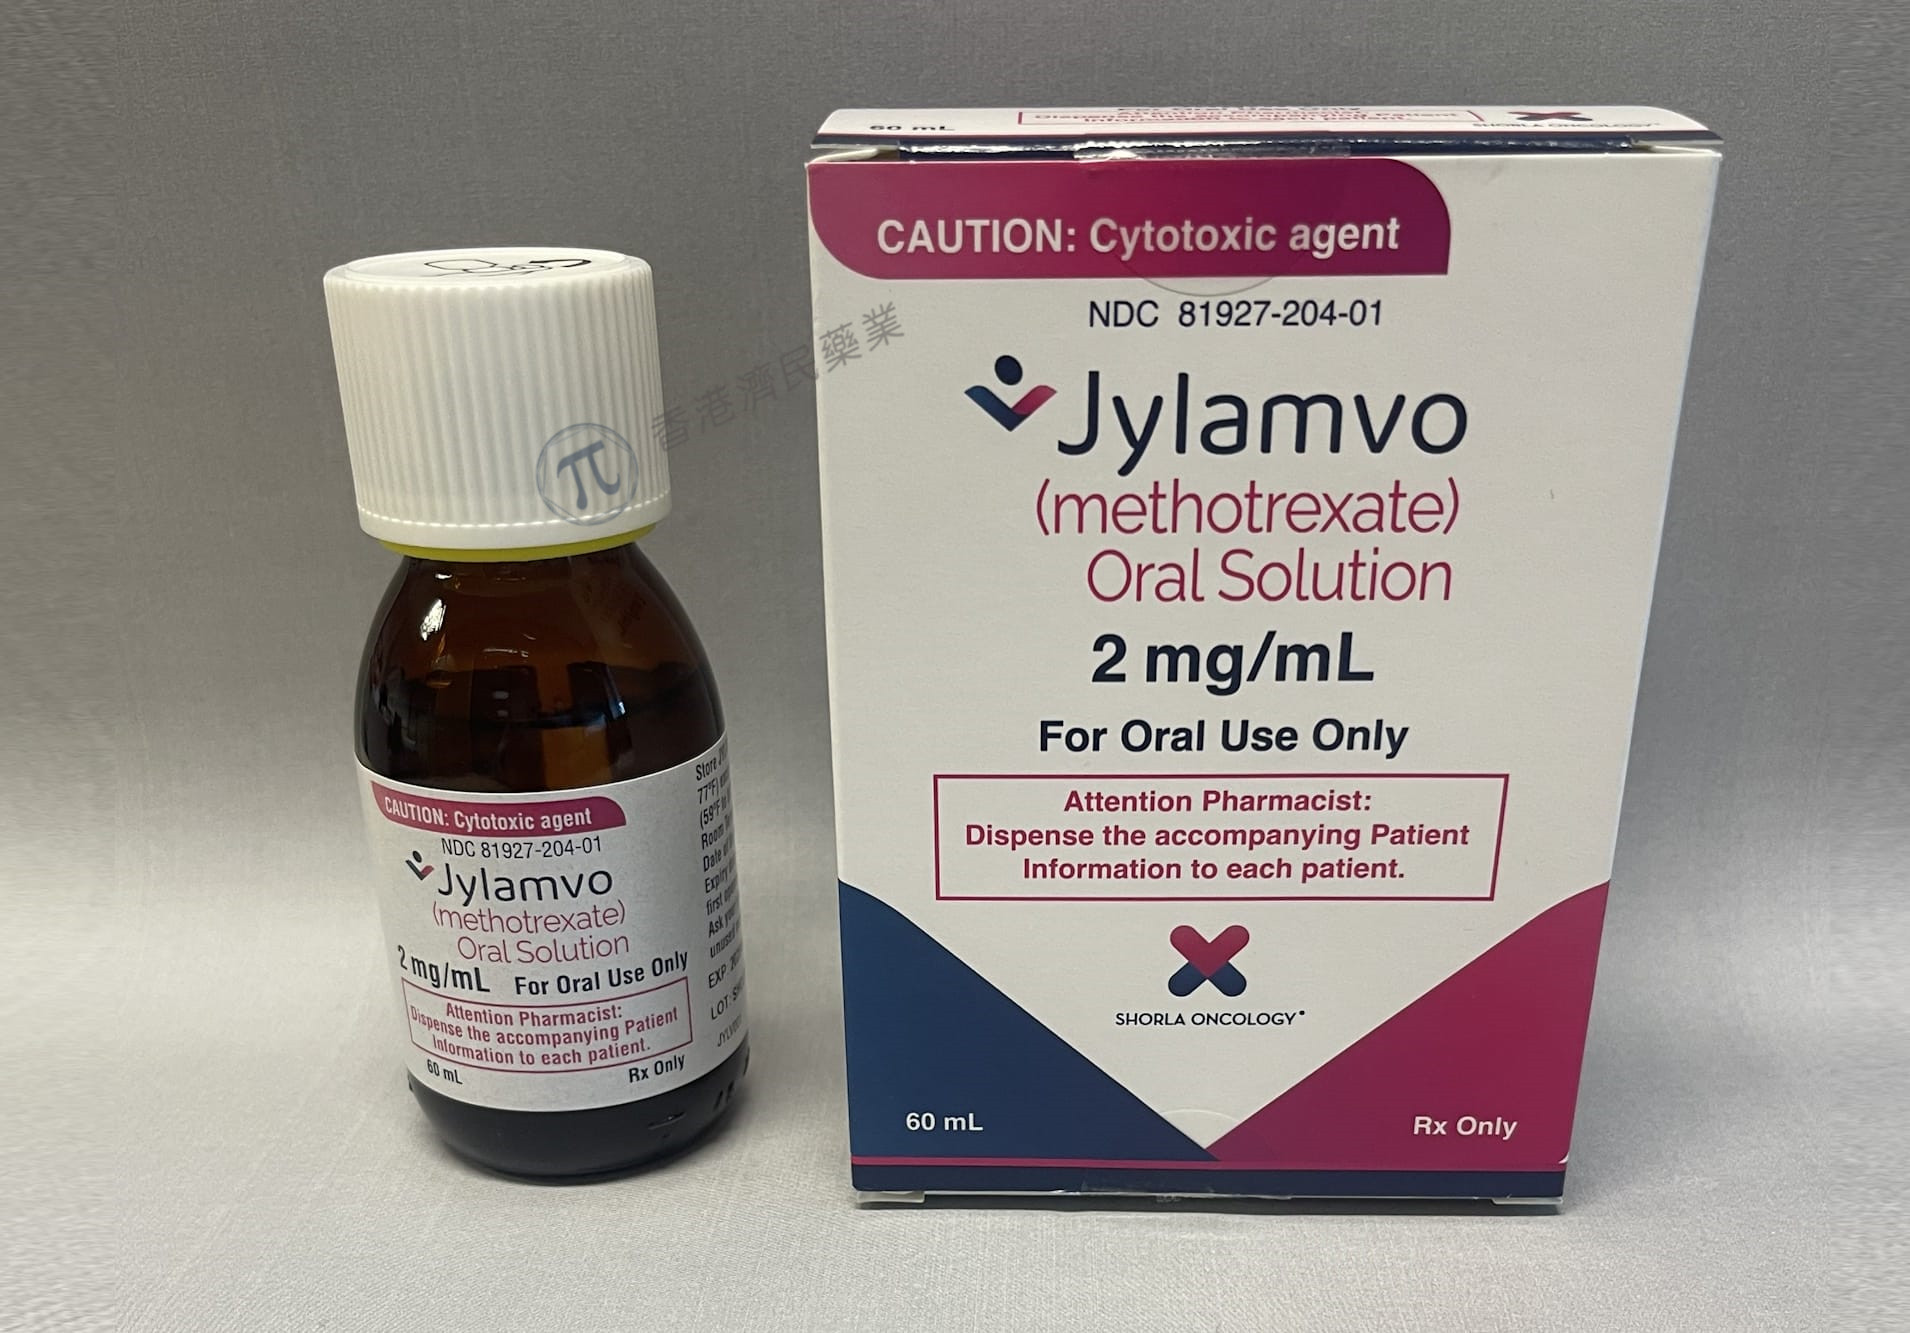 甲氨蝶呤口服溶液制剂Jylamvo现已在美国上市